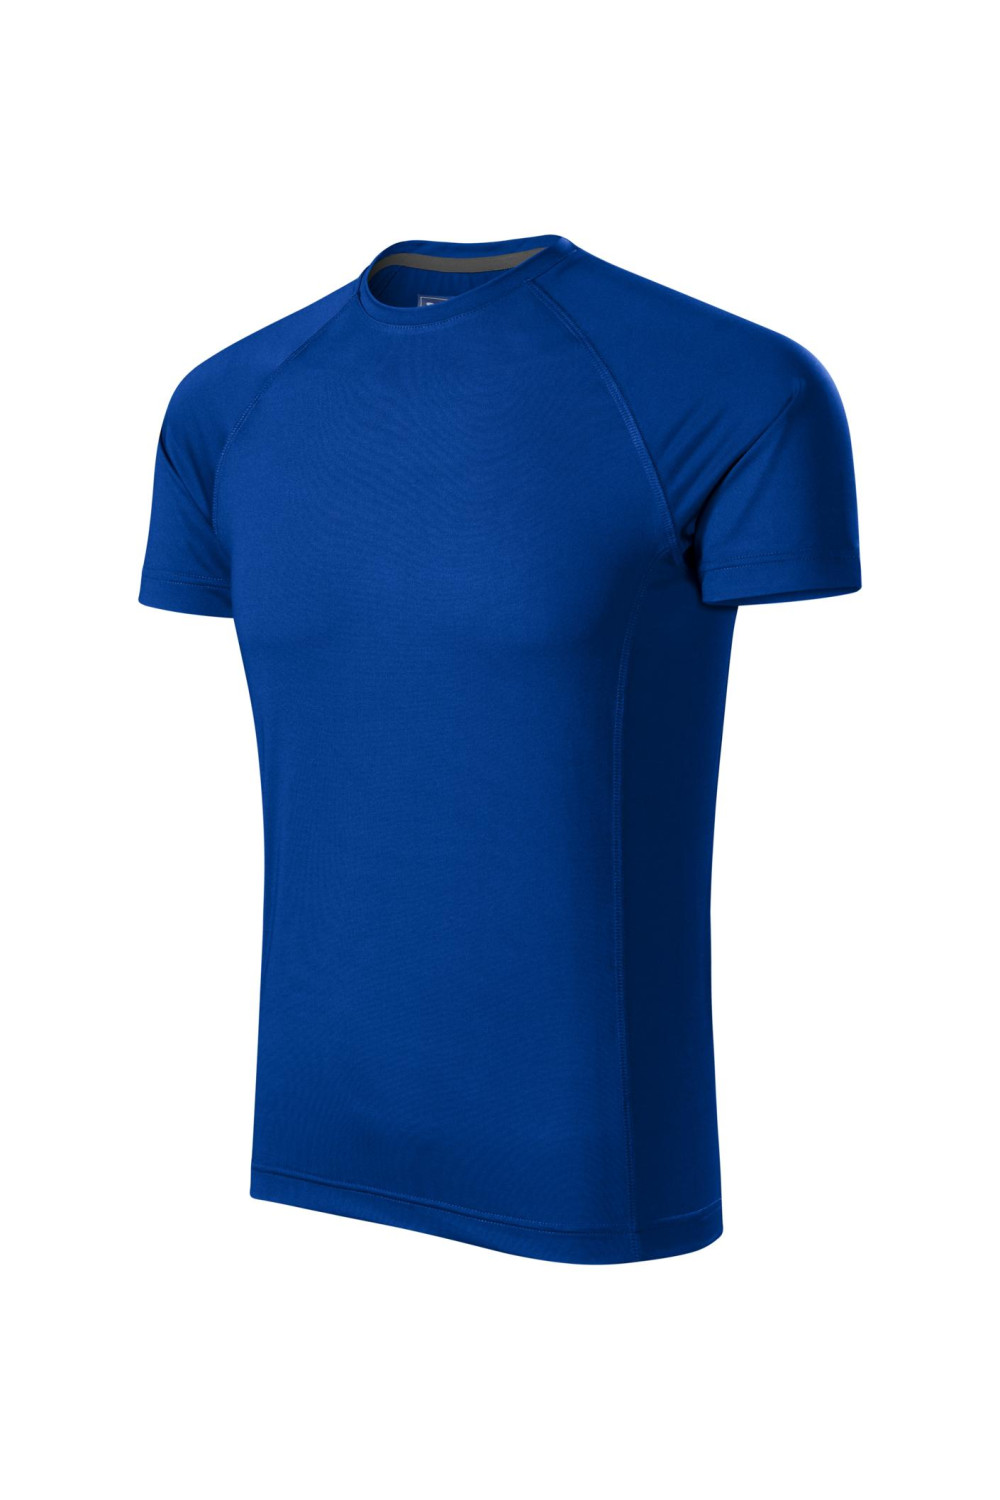 DESTINY 175 MALFINI ADLER Sportowa koszulka męska t-shirt chabrowy